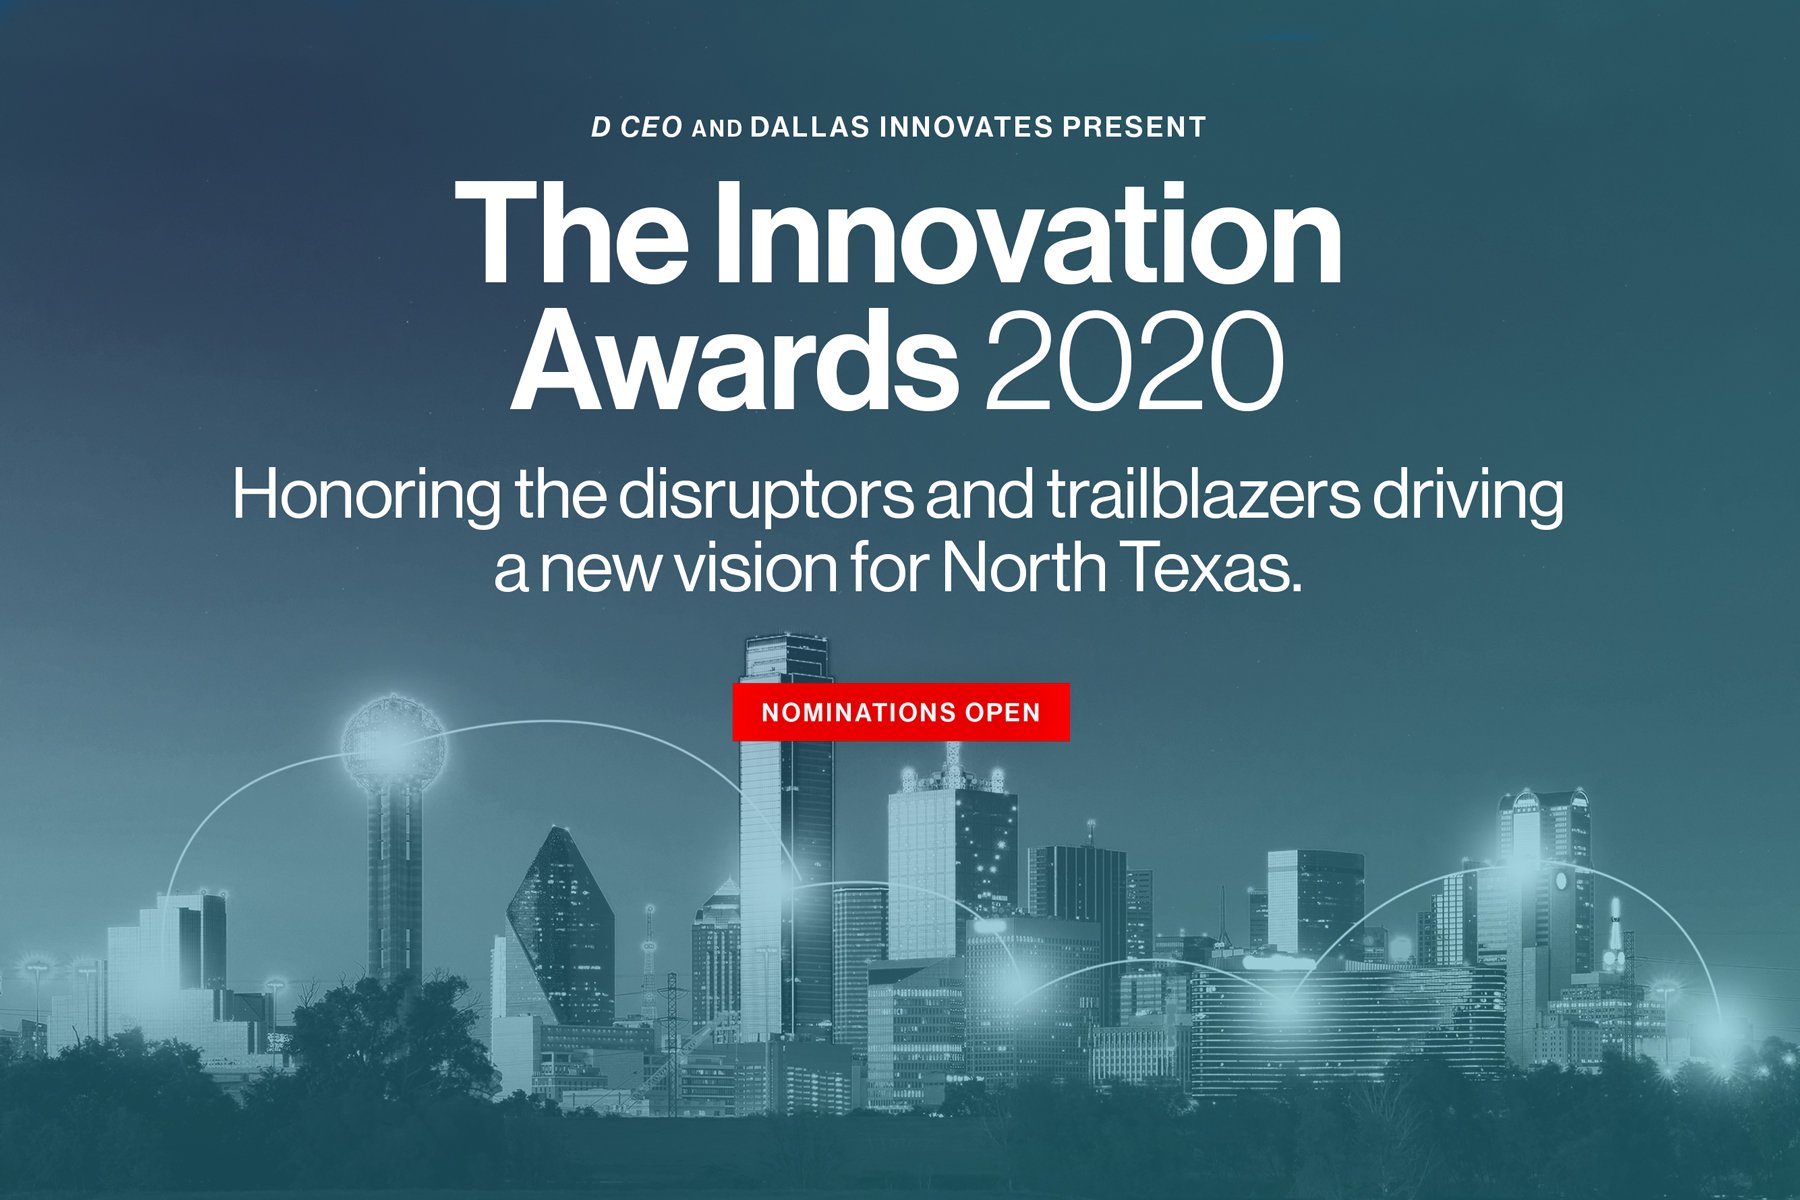 Innovation awards nominations open